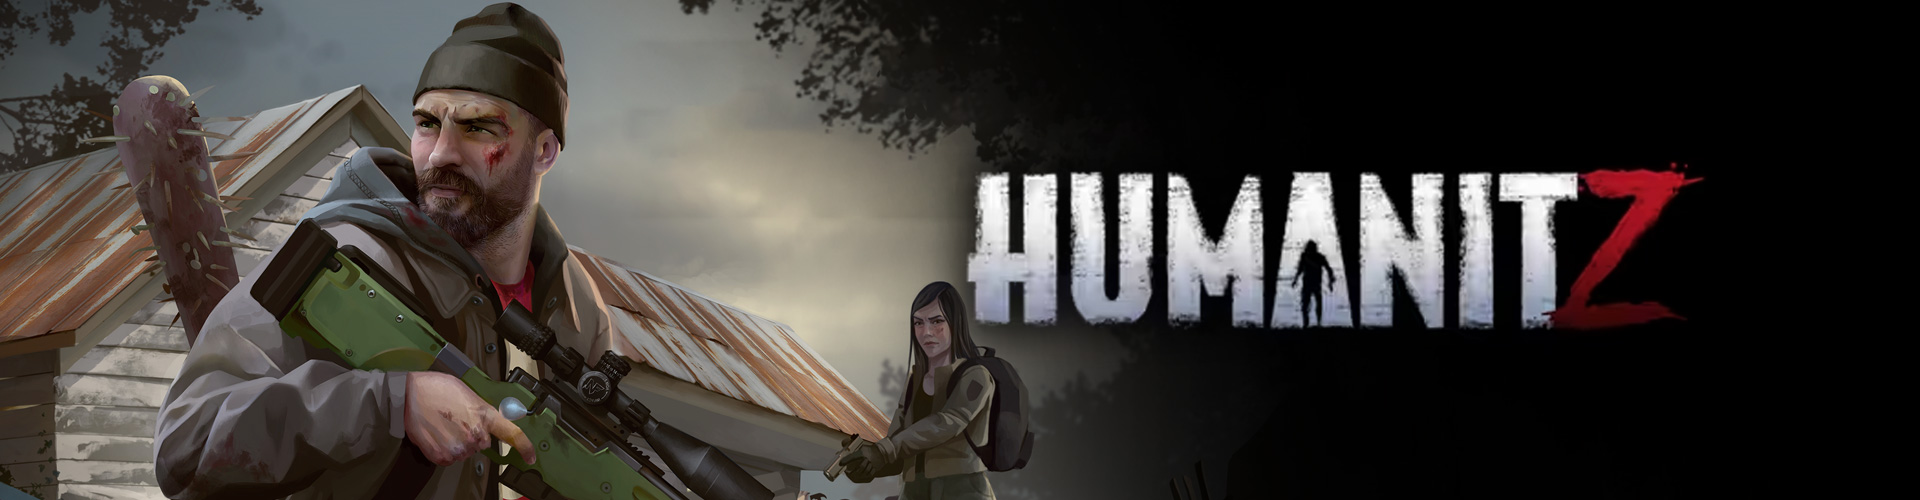 HumanitZ Ã© survival horror contro gli zombie